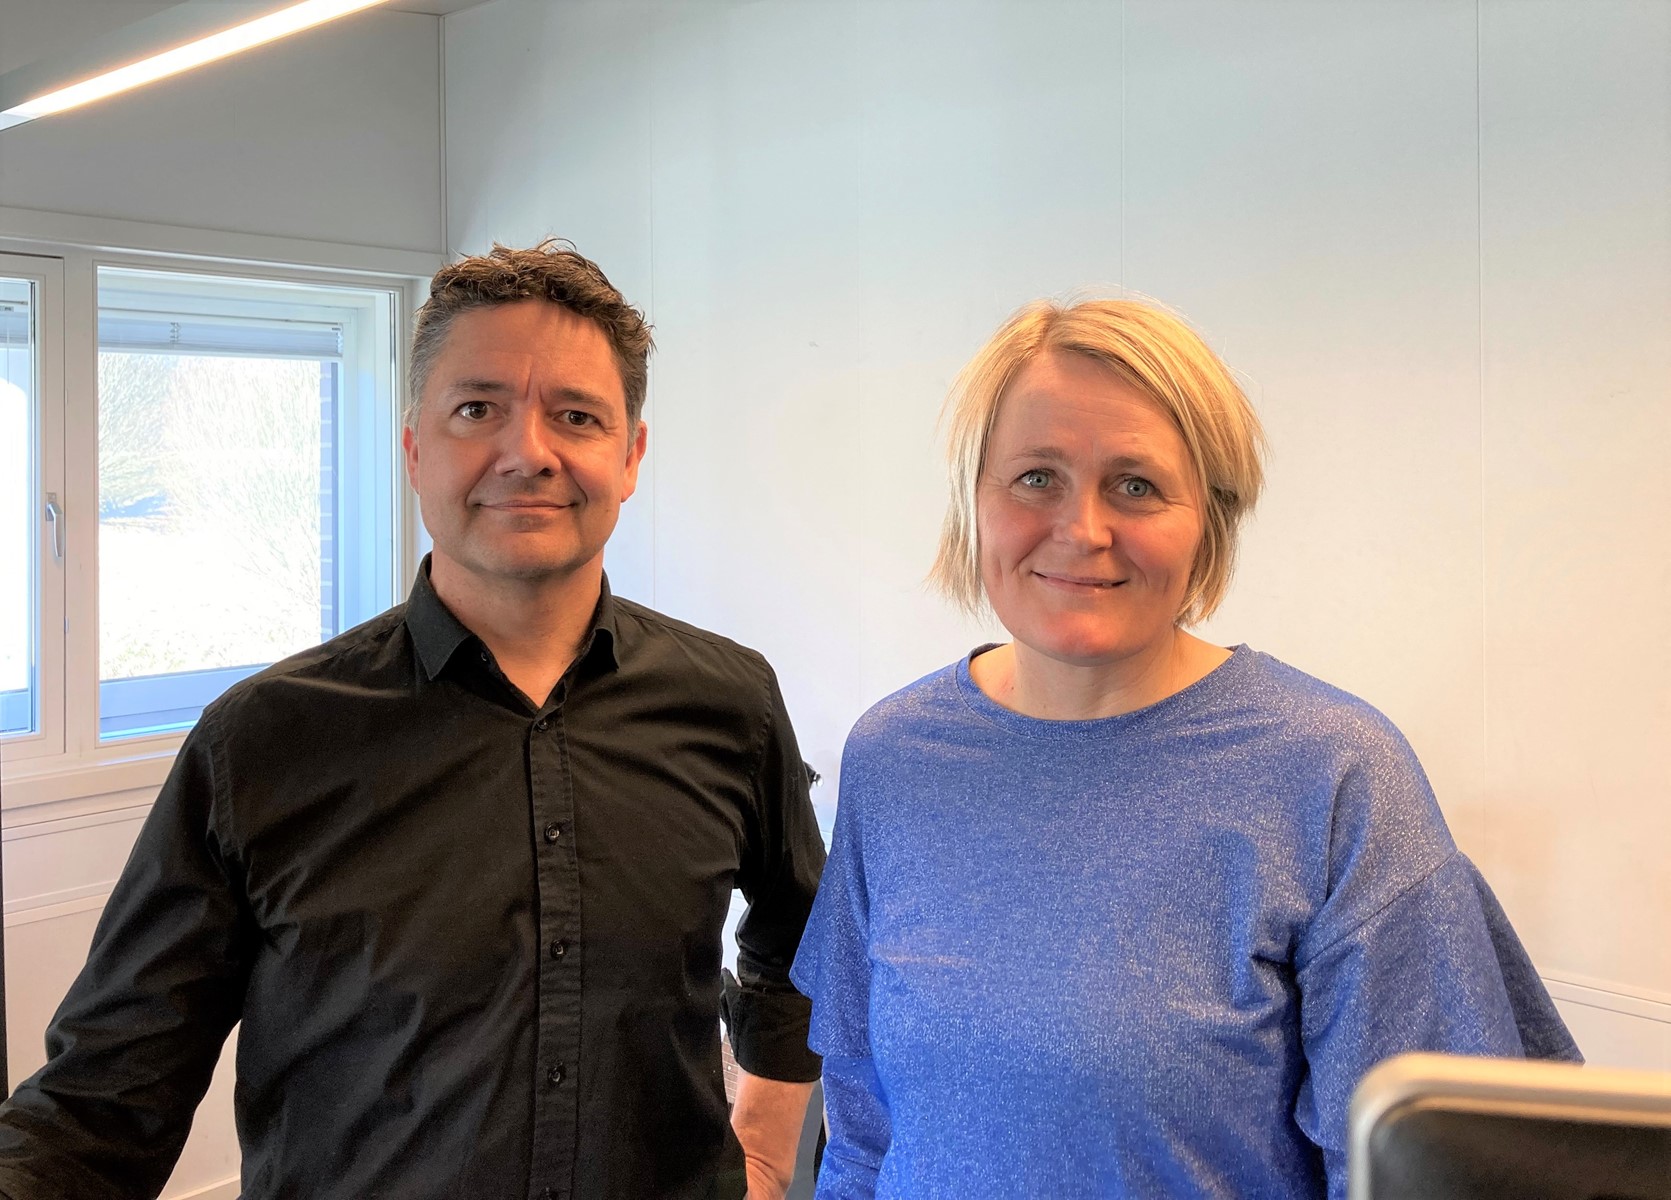 Jens Otto Størup og Rikke Nielsen fortæller i podcasten også om et dilemma fra deres eget arbejdsliv. Foto: Karen Haaning.